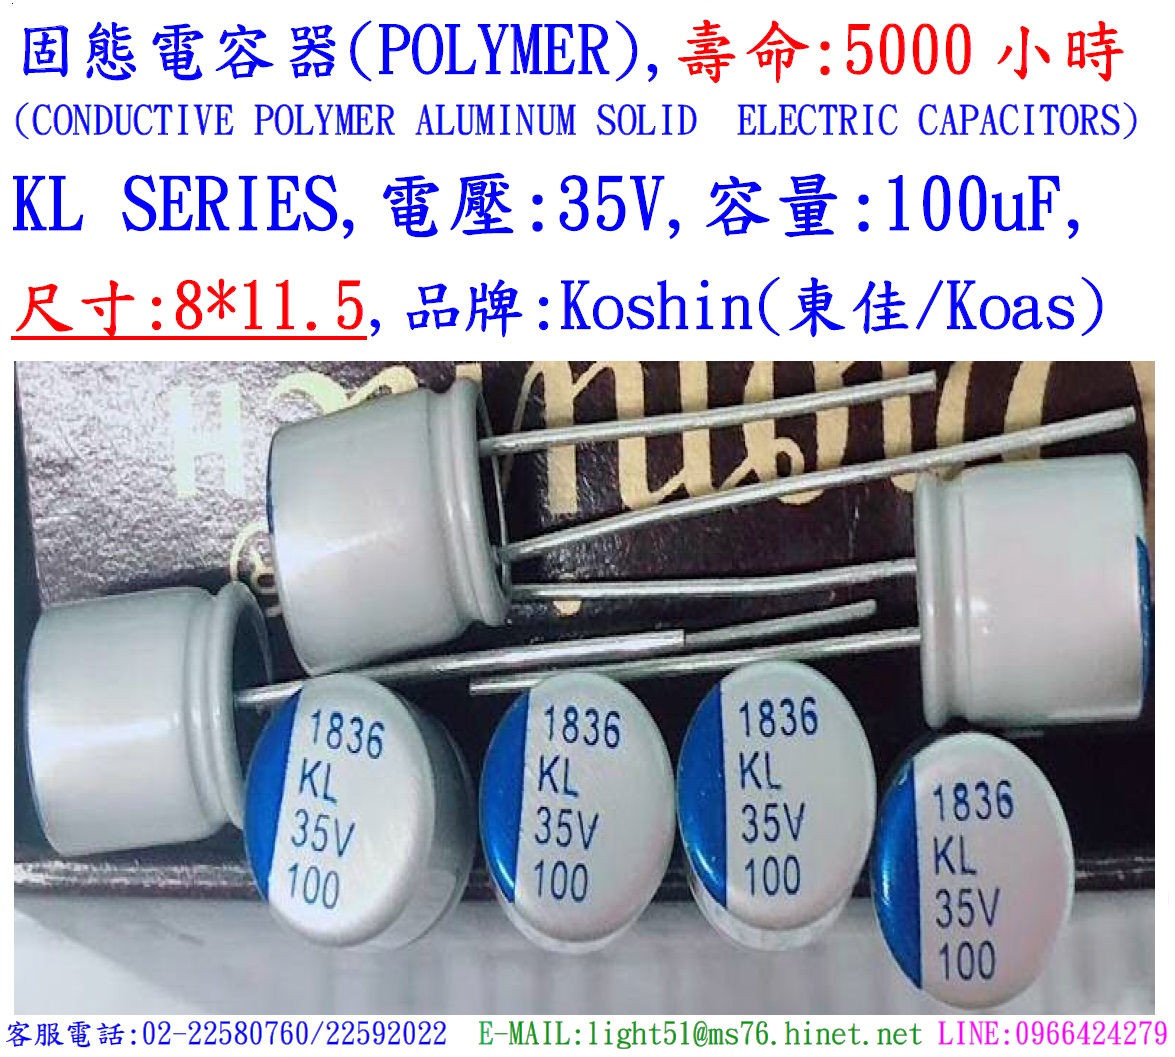 KL,35V,100uF,尺寸:8X11.5,固態電容器(Hybird),壽命:5000小時,KOSHIN(東佳)